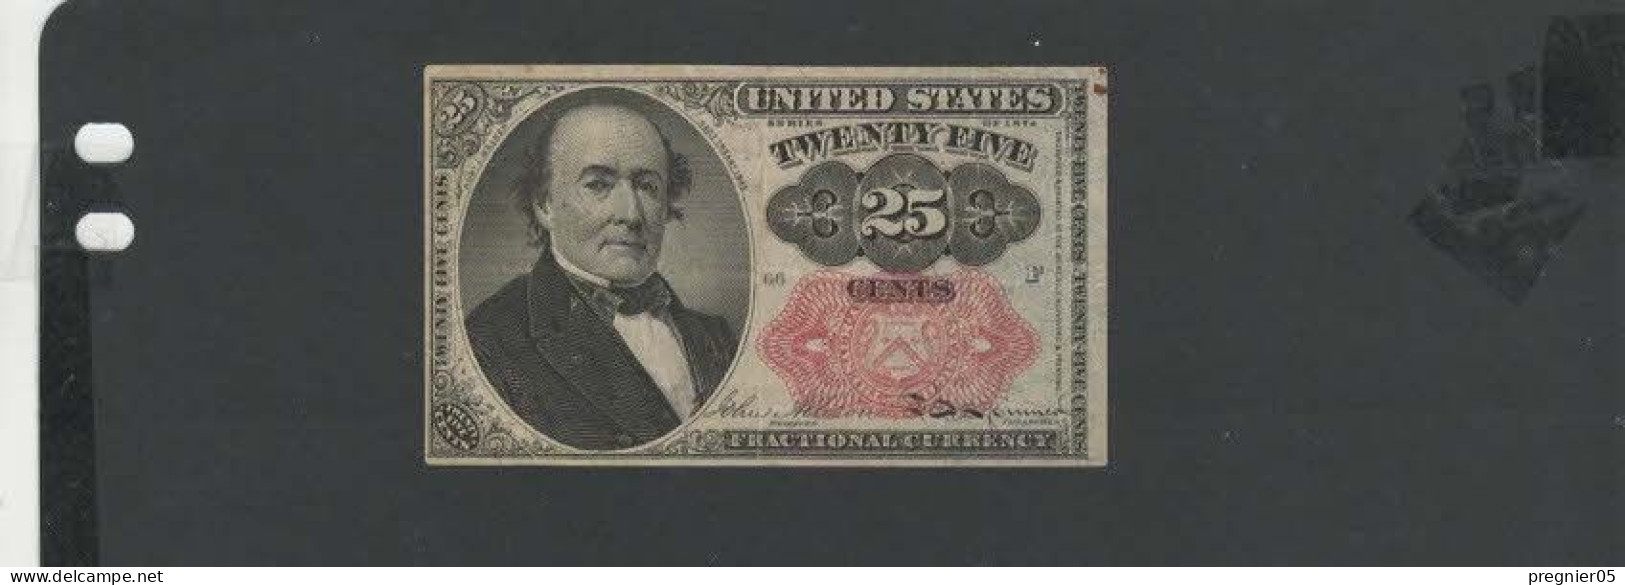 USA - Billet 25 Cents 1874  SUP/XF  P.123 - Biljetten Van De Verenigde Staten (1862-1923)